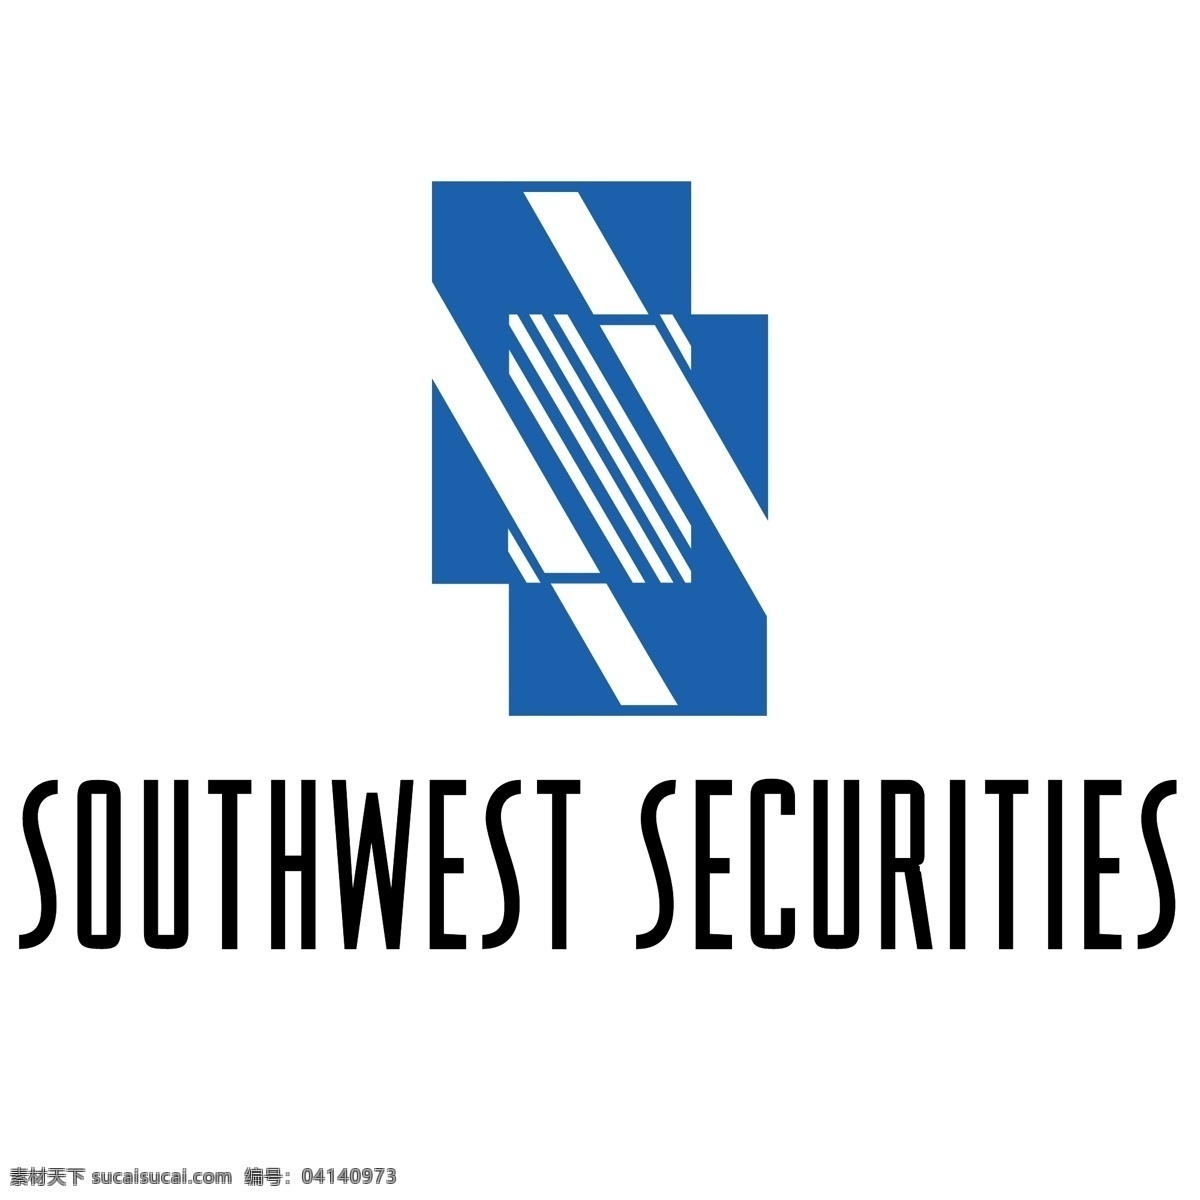 西南 西南证券 证券 证券设计文件 证券公司 向量 向量金融证券 持有人 矢量 白色